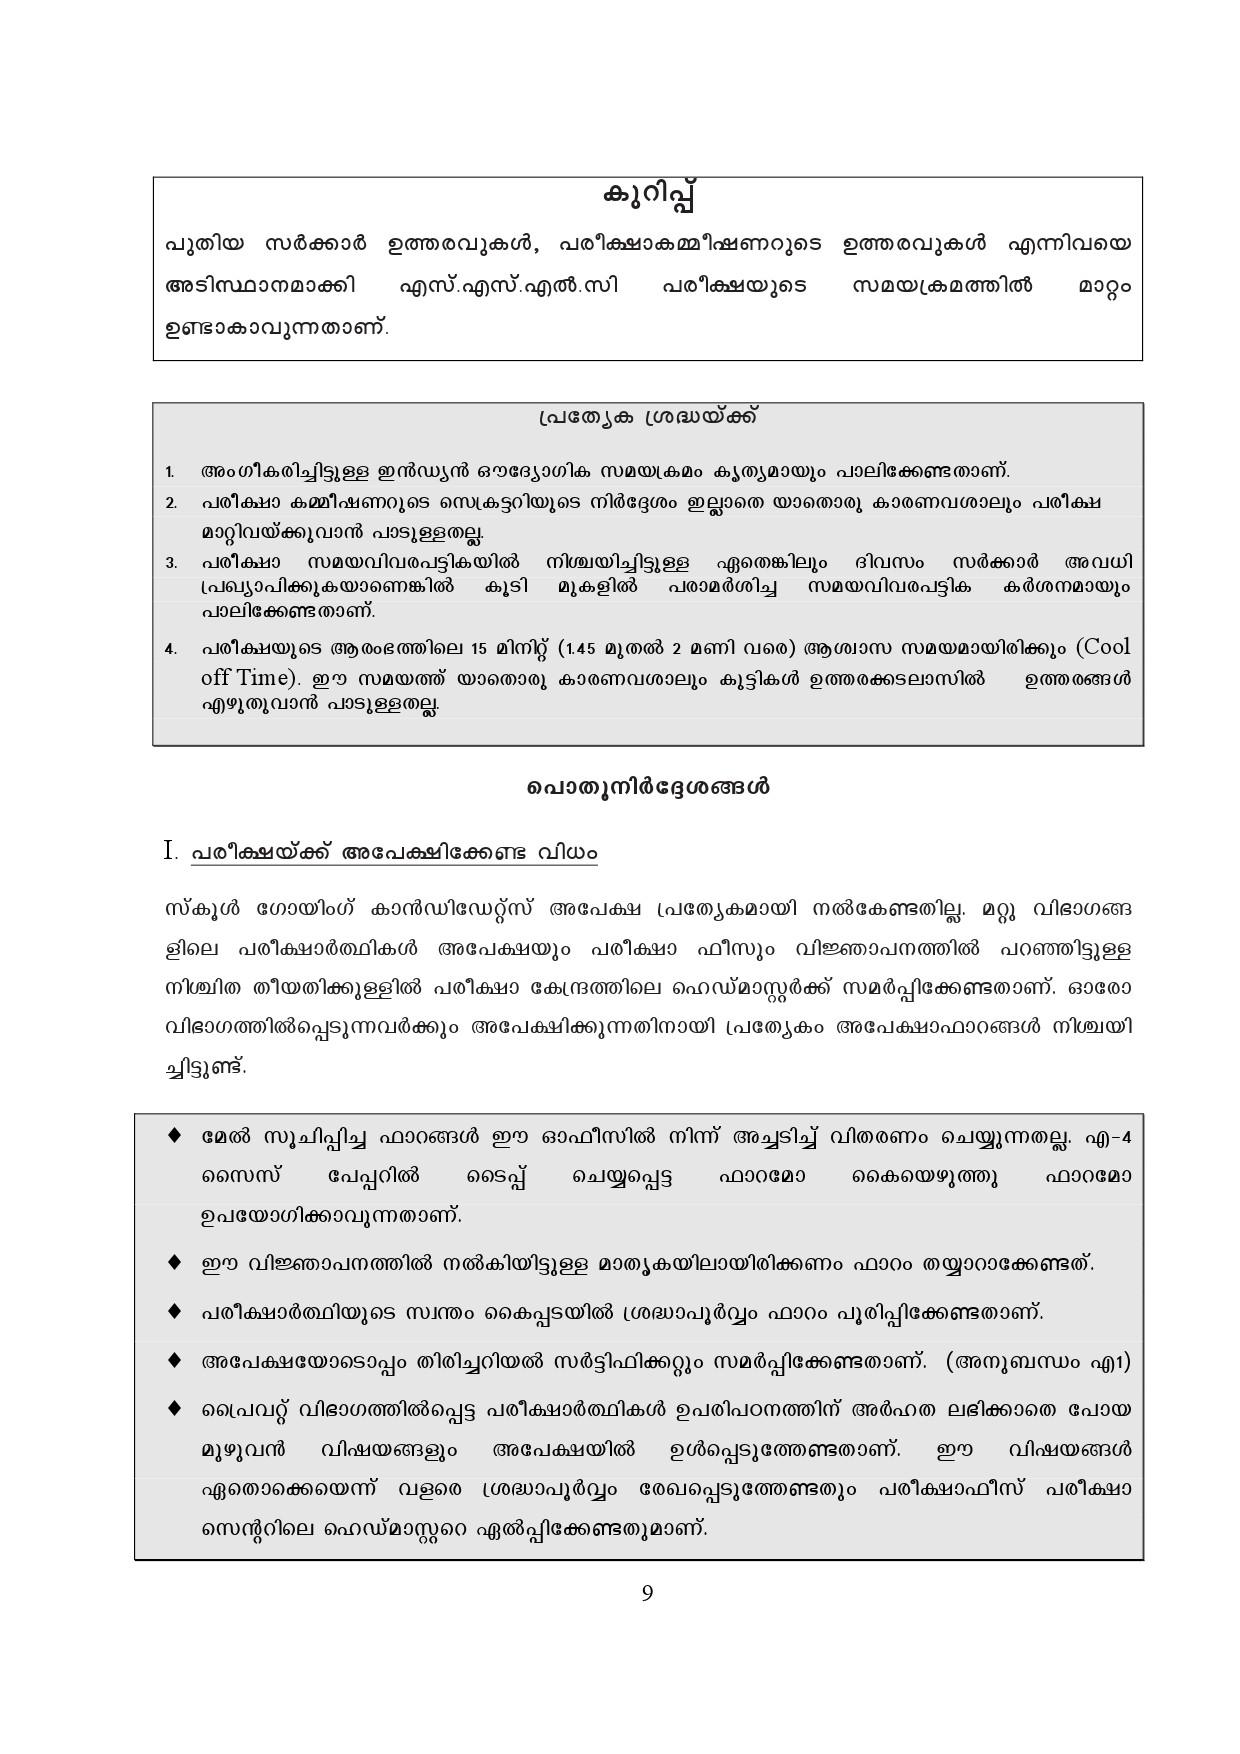 Kerala SSLC Exam Result 2019 - Notification Image 9